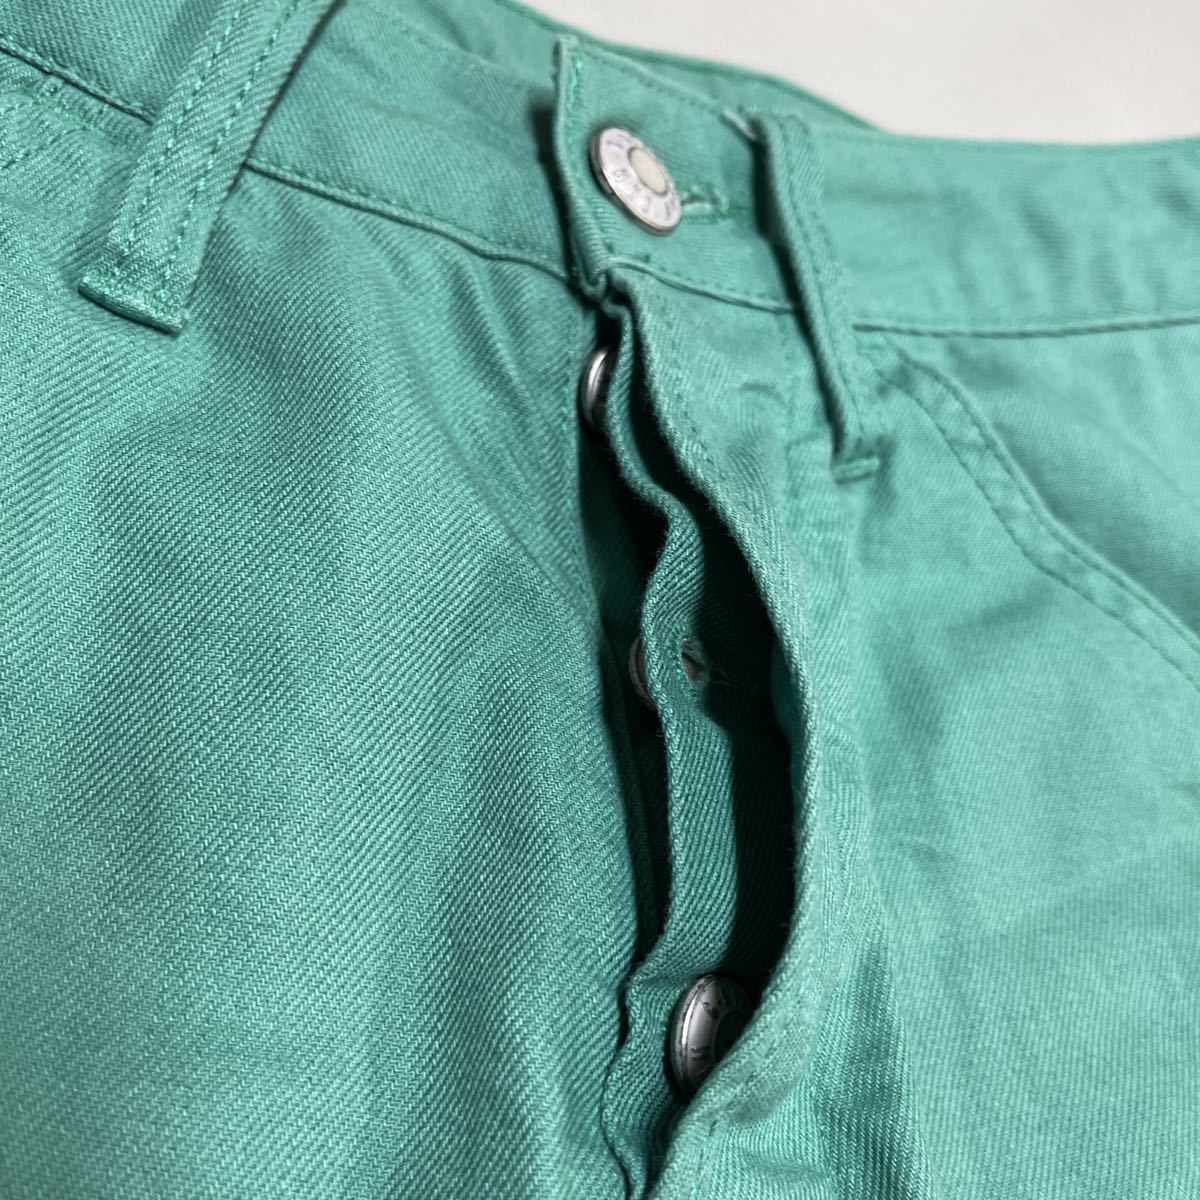 G-STAR RAW ジースターロウ ショートパンツ 短パン ハーフパンツ デニム パンツ メンズ ジーンズ 28インチ 美品 緑 グリーン_画像4